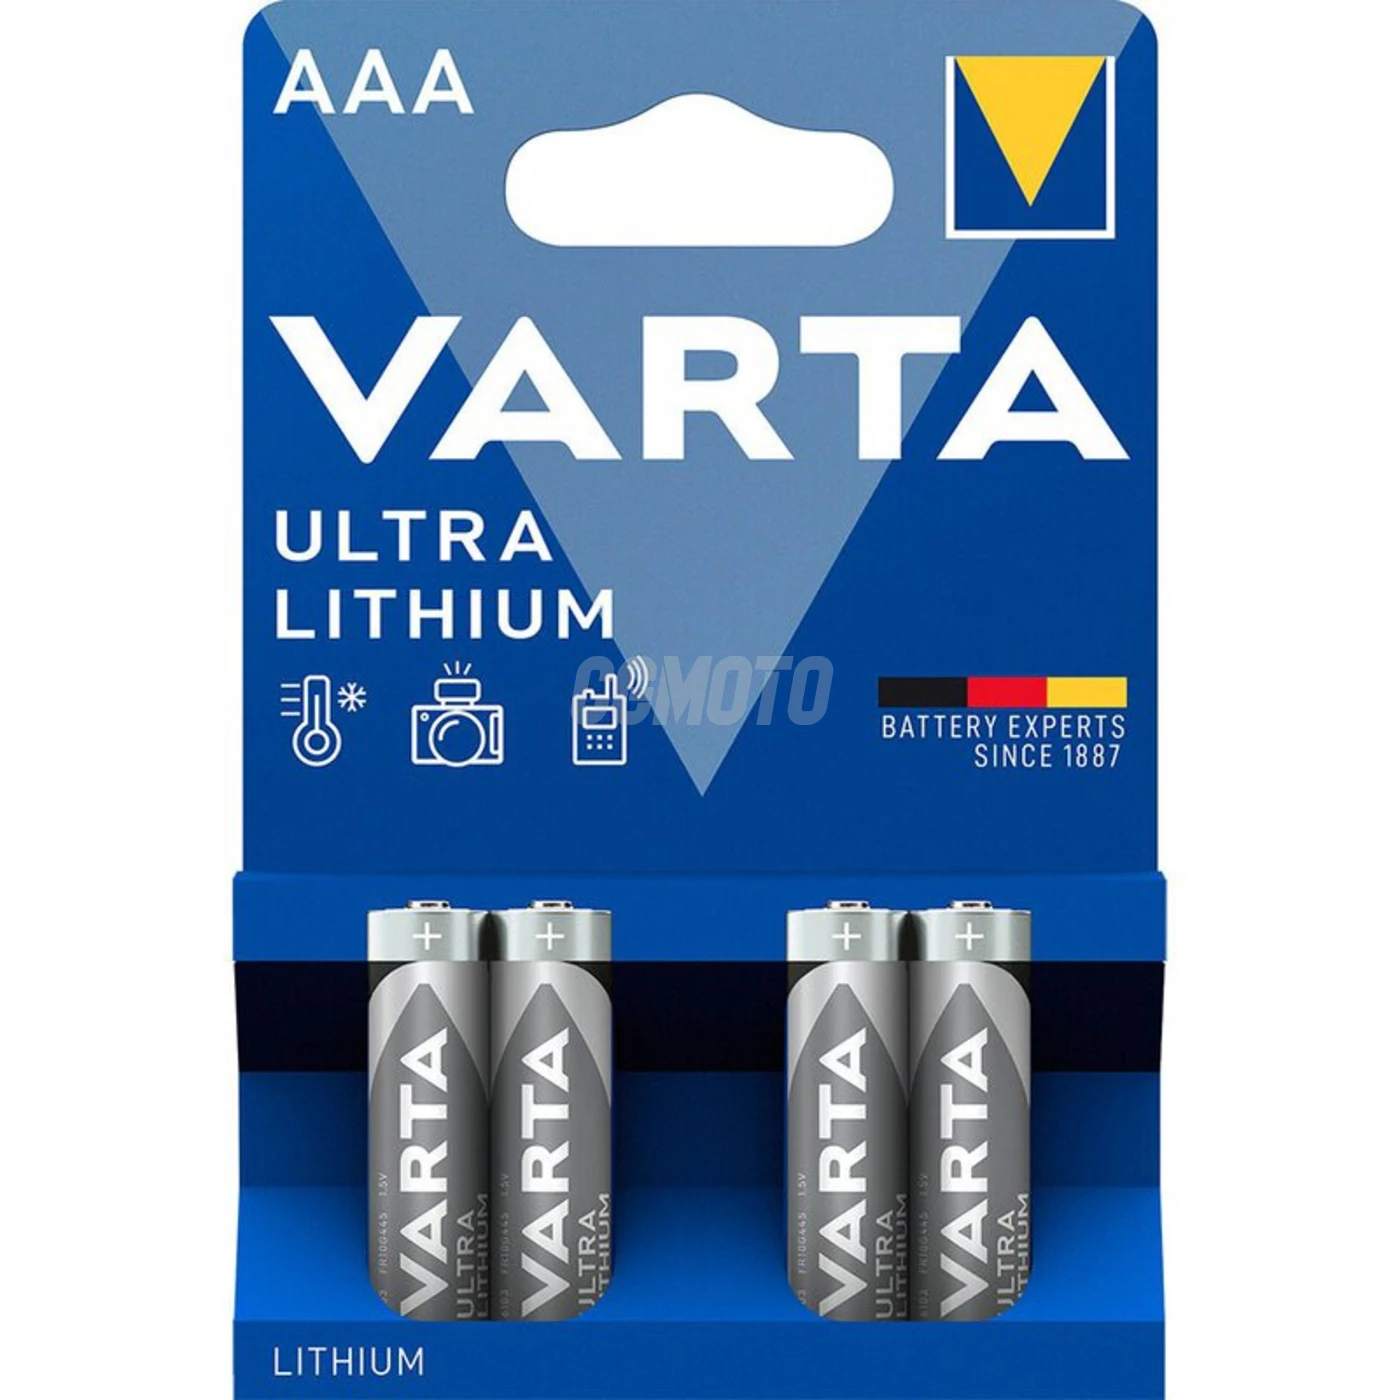 Varta lithium MINI STILO/AAA x 4 pile (blister)